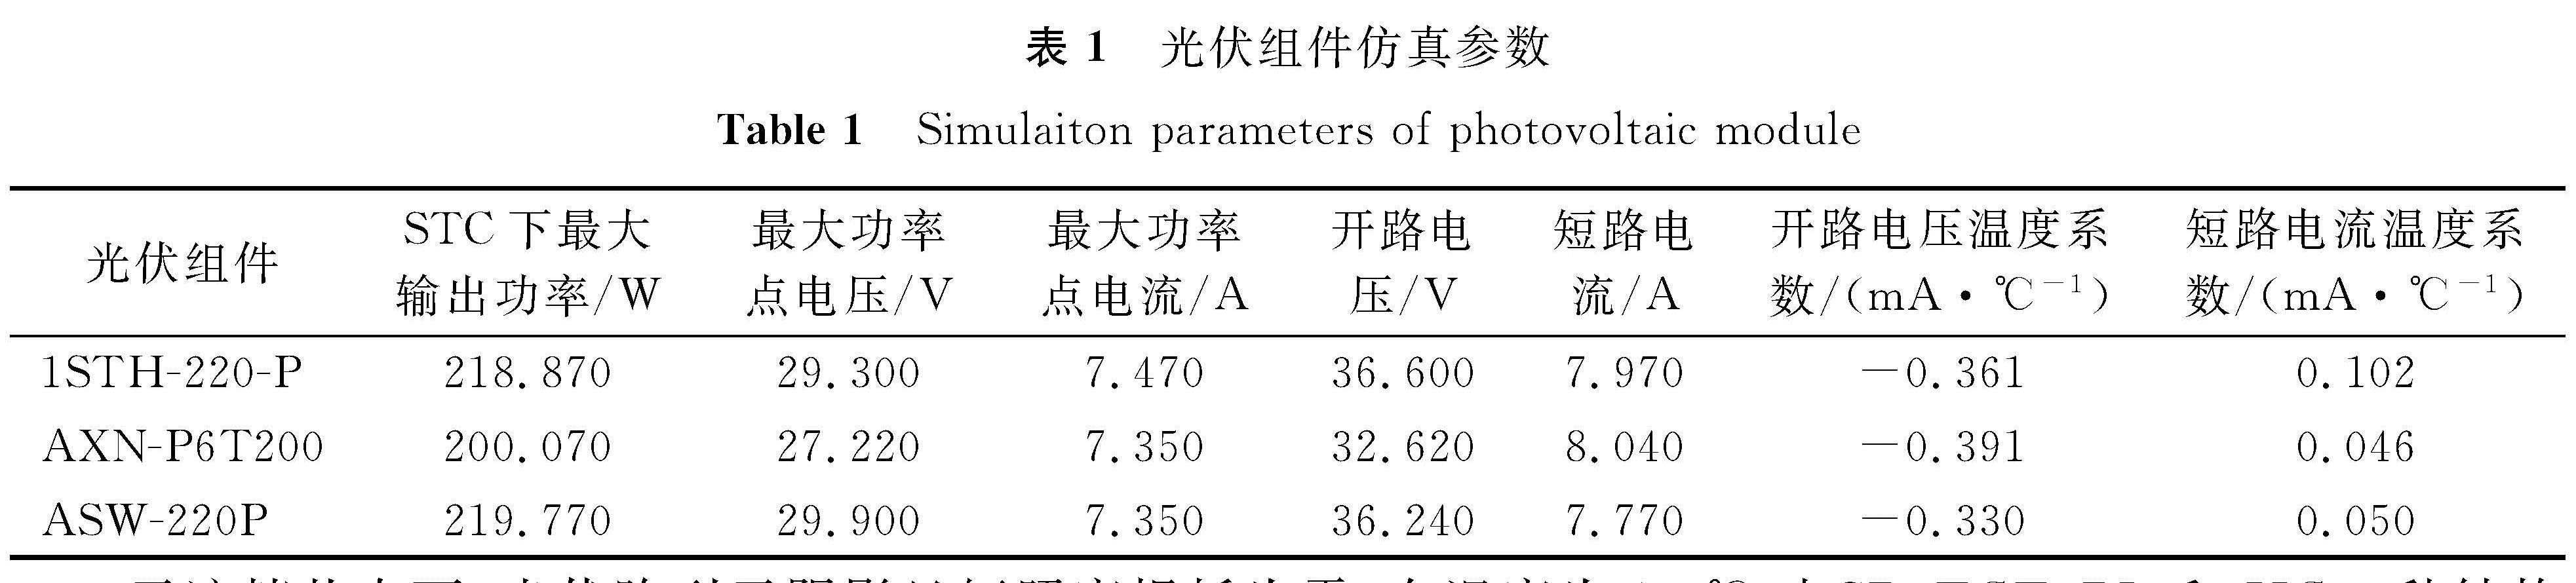 表1 光伏组件仿真参数<br/>Table 1 Simulaiton parameters of photovoltaic module